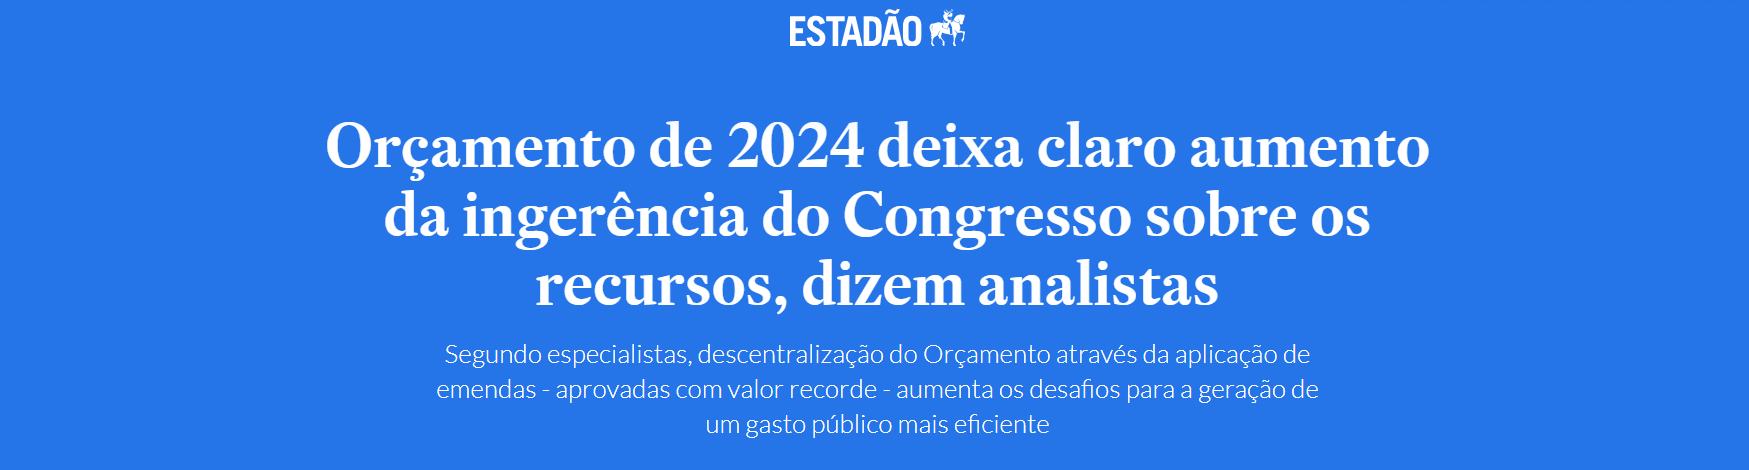 Orçamento de 2024 deixa claro aumento da ingerência do Congresso sobre os recursos, dizem analistas - Estadão